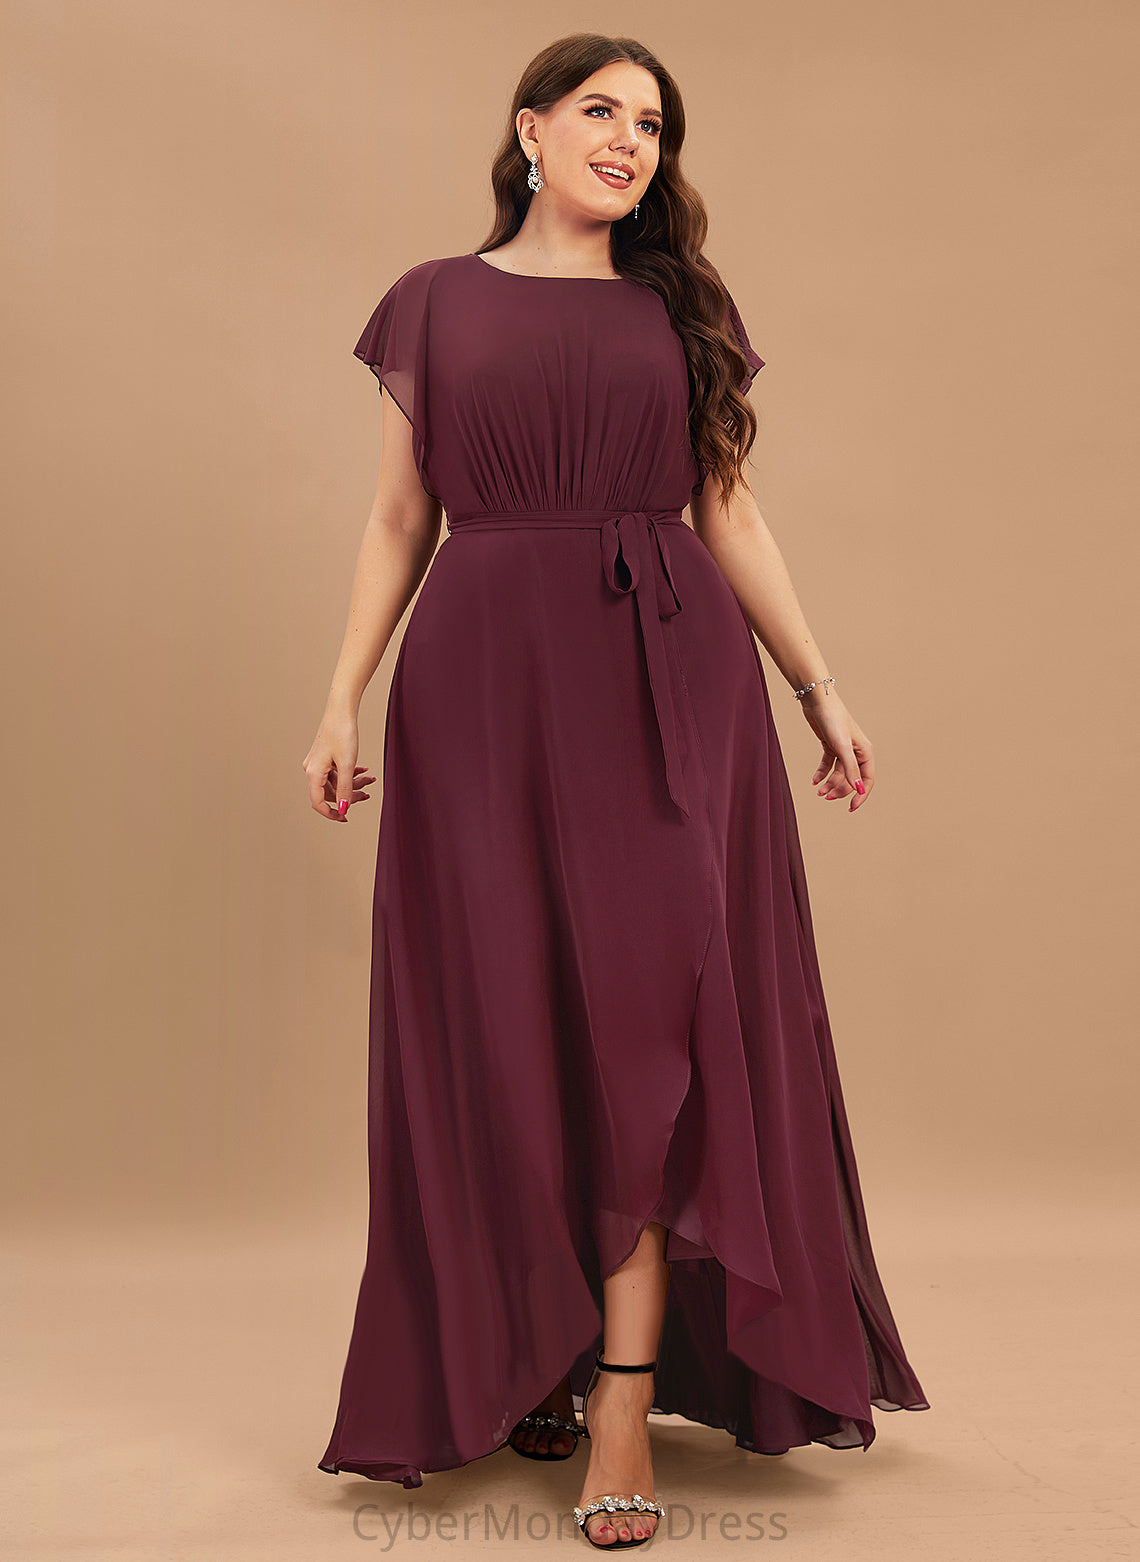 Fabric Neckline Silhouette Ruffle Length Asymmetrical ScoopNeck A-Line Embellishment Mara Sleeveless A-Line/Princess Bridesmaid Dresses